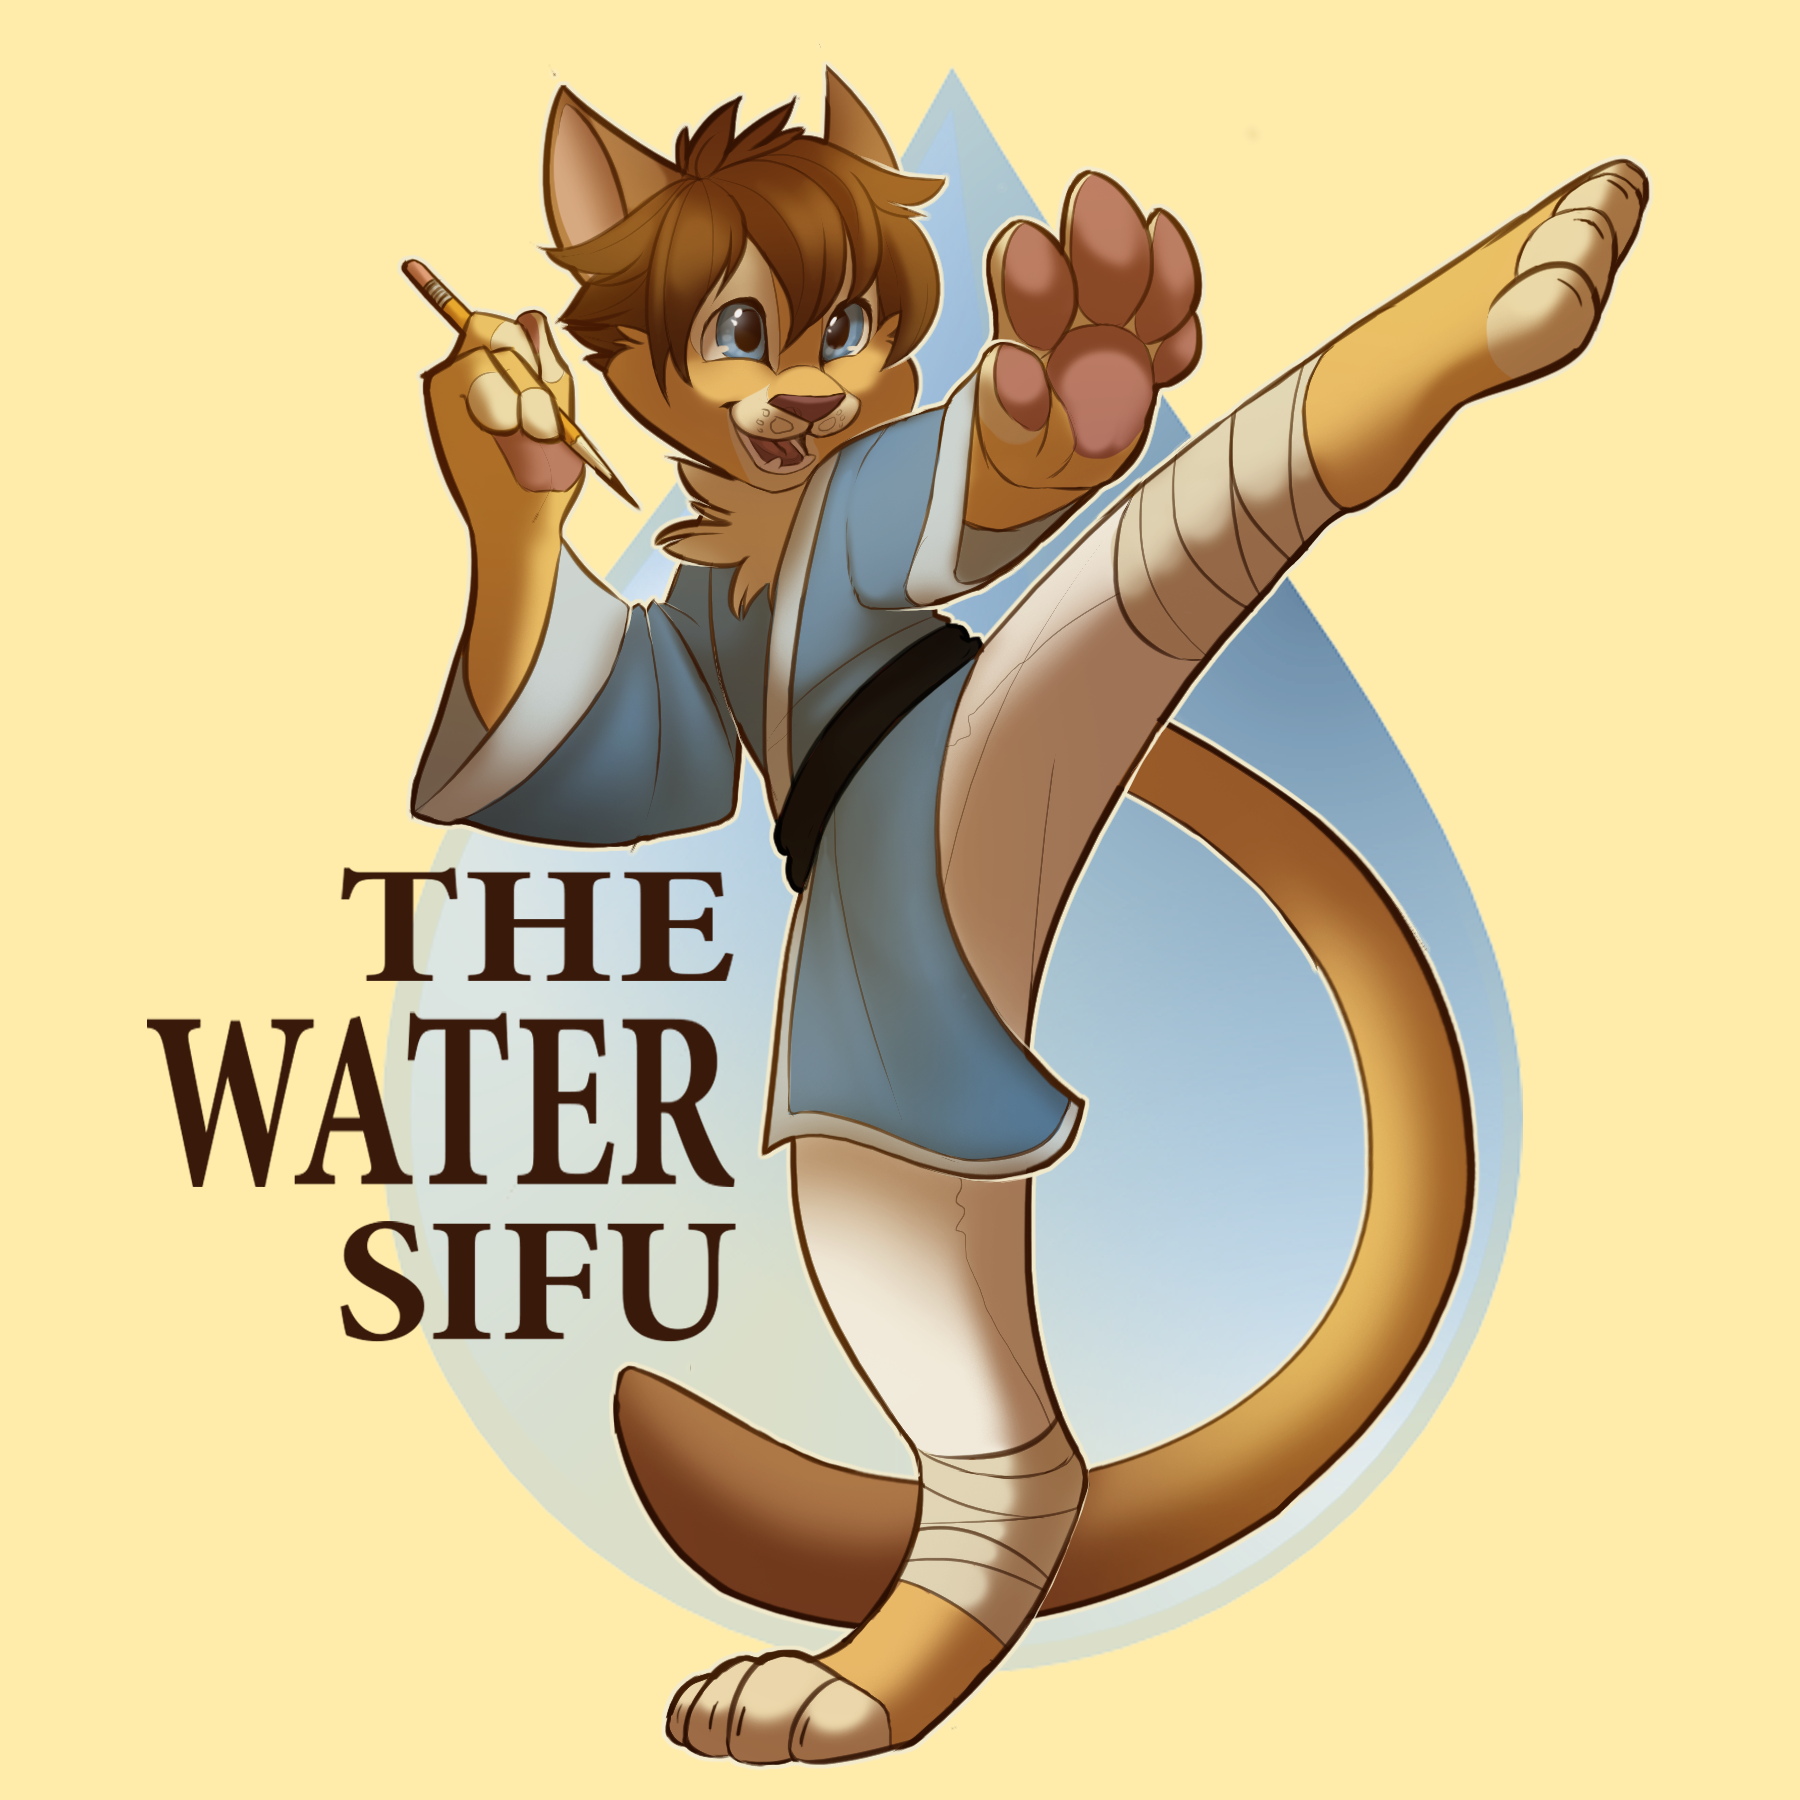 The Water Sifu